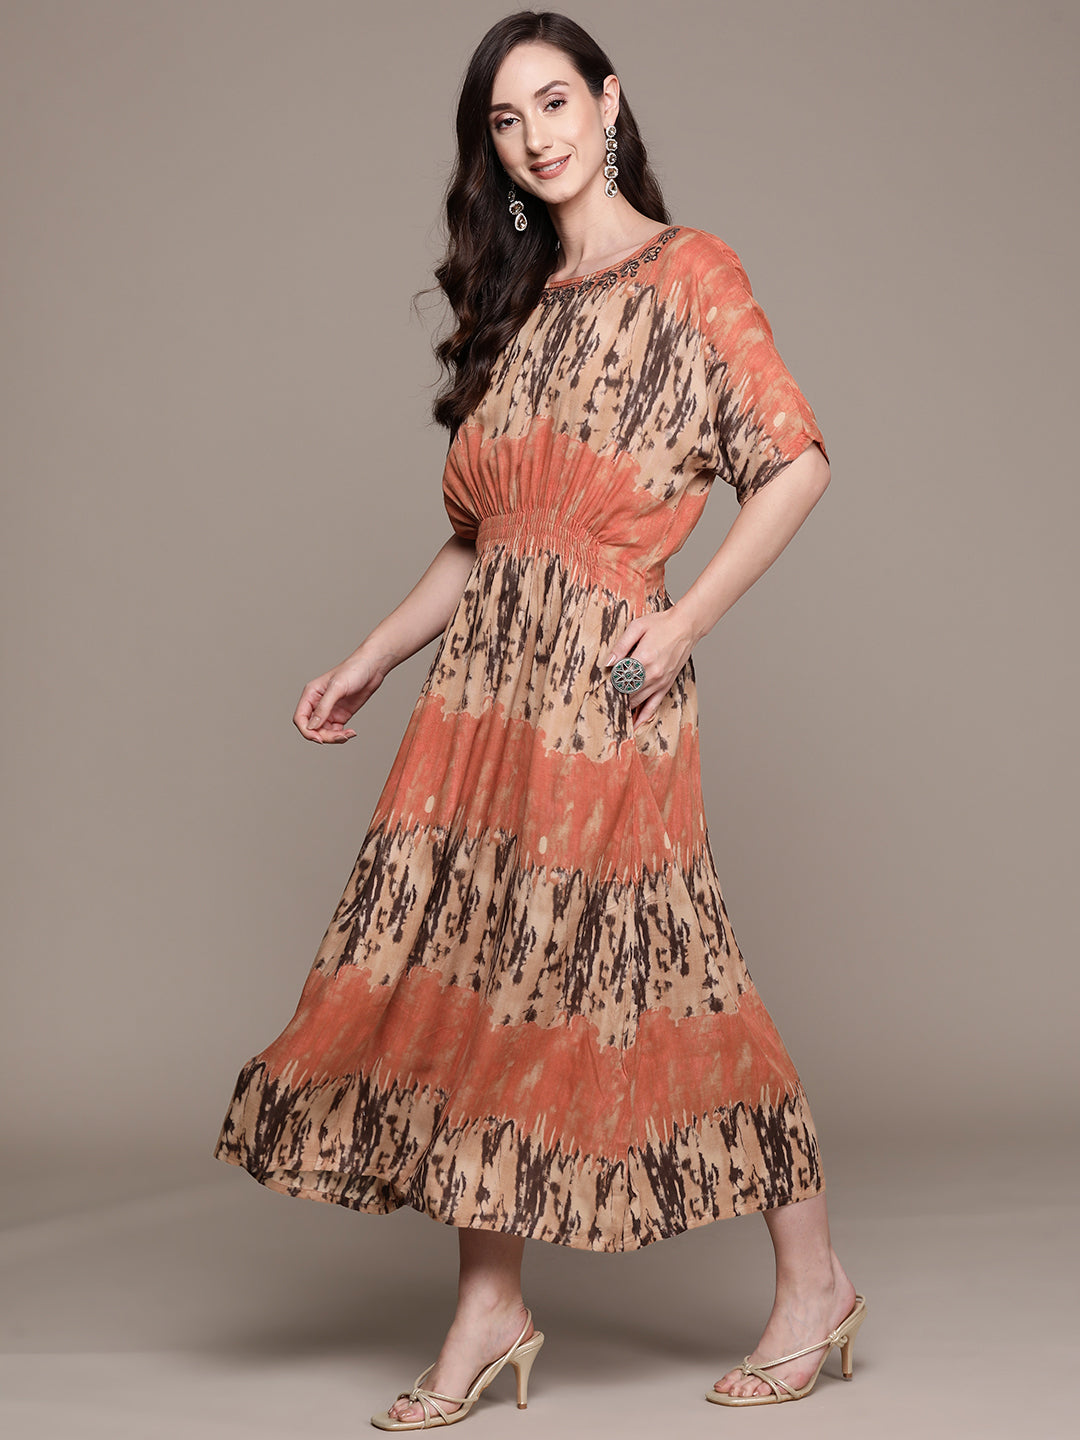 Ishin Women's Multicolored Empire Dress